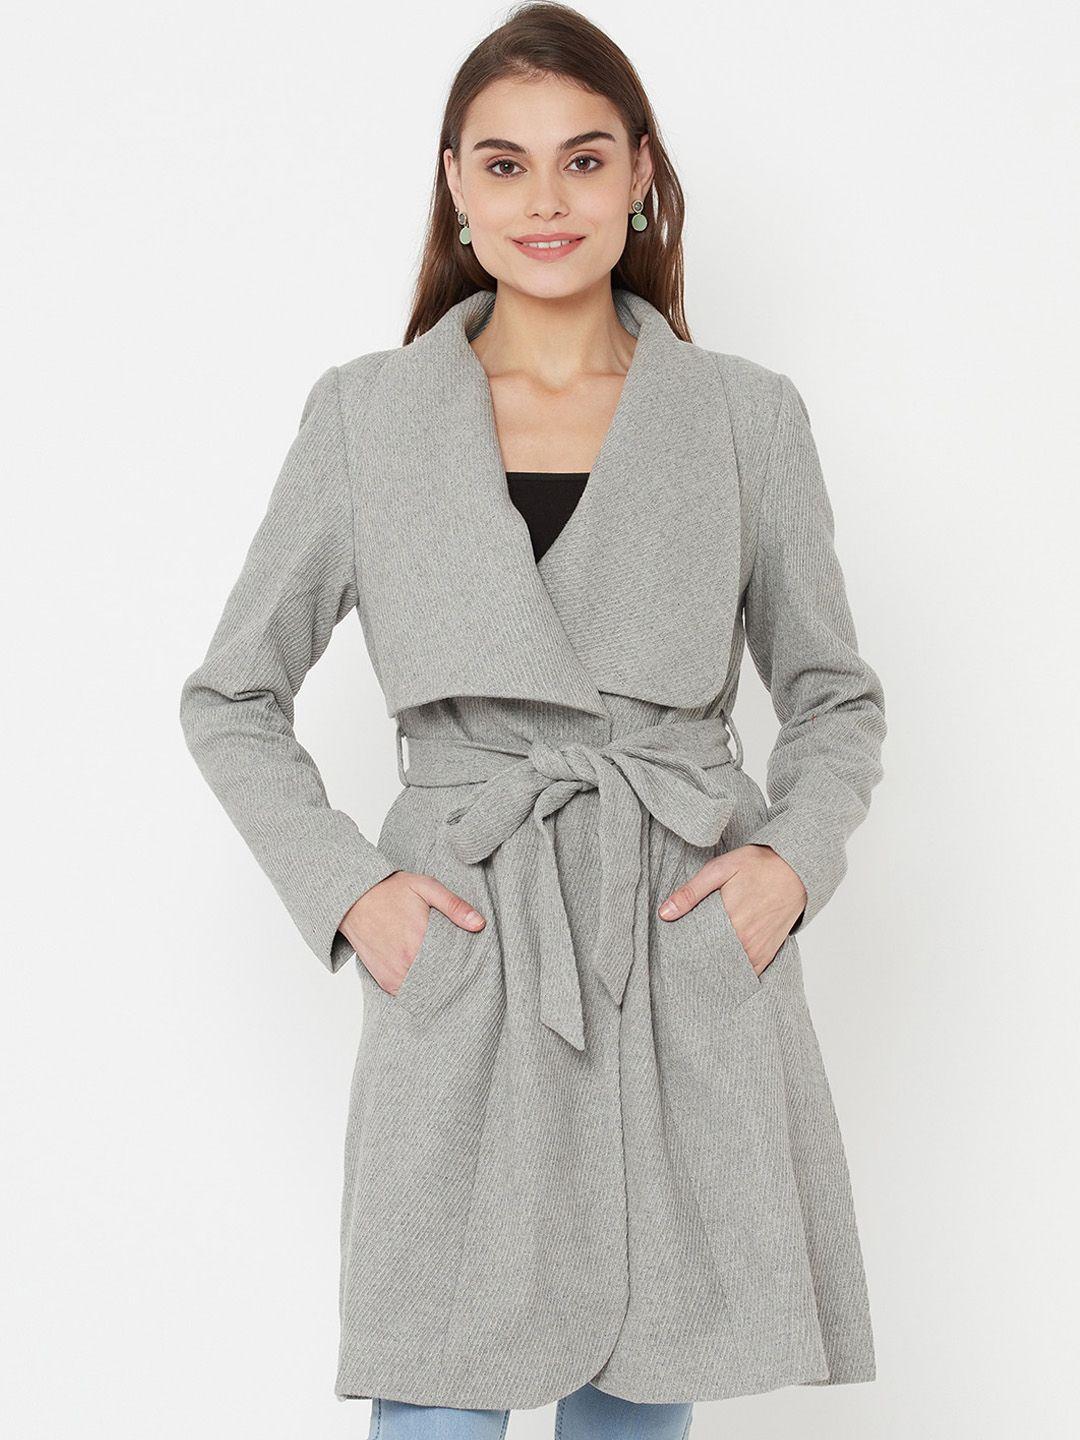 owncraft women grey self-design over coat